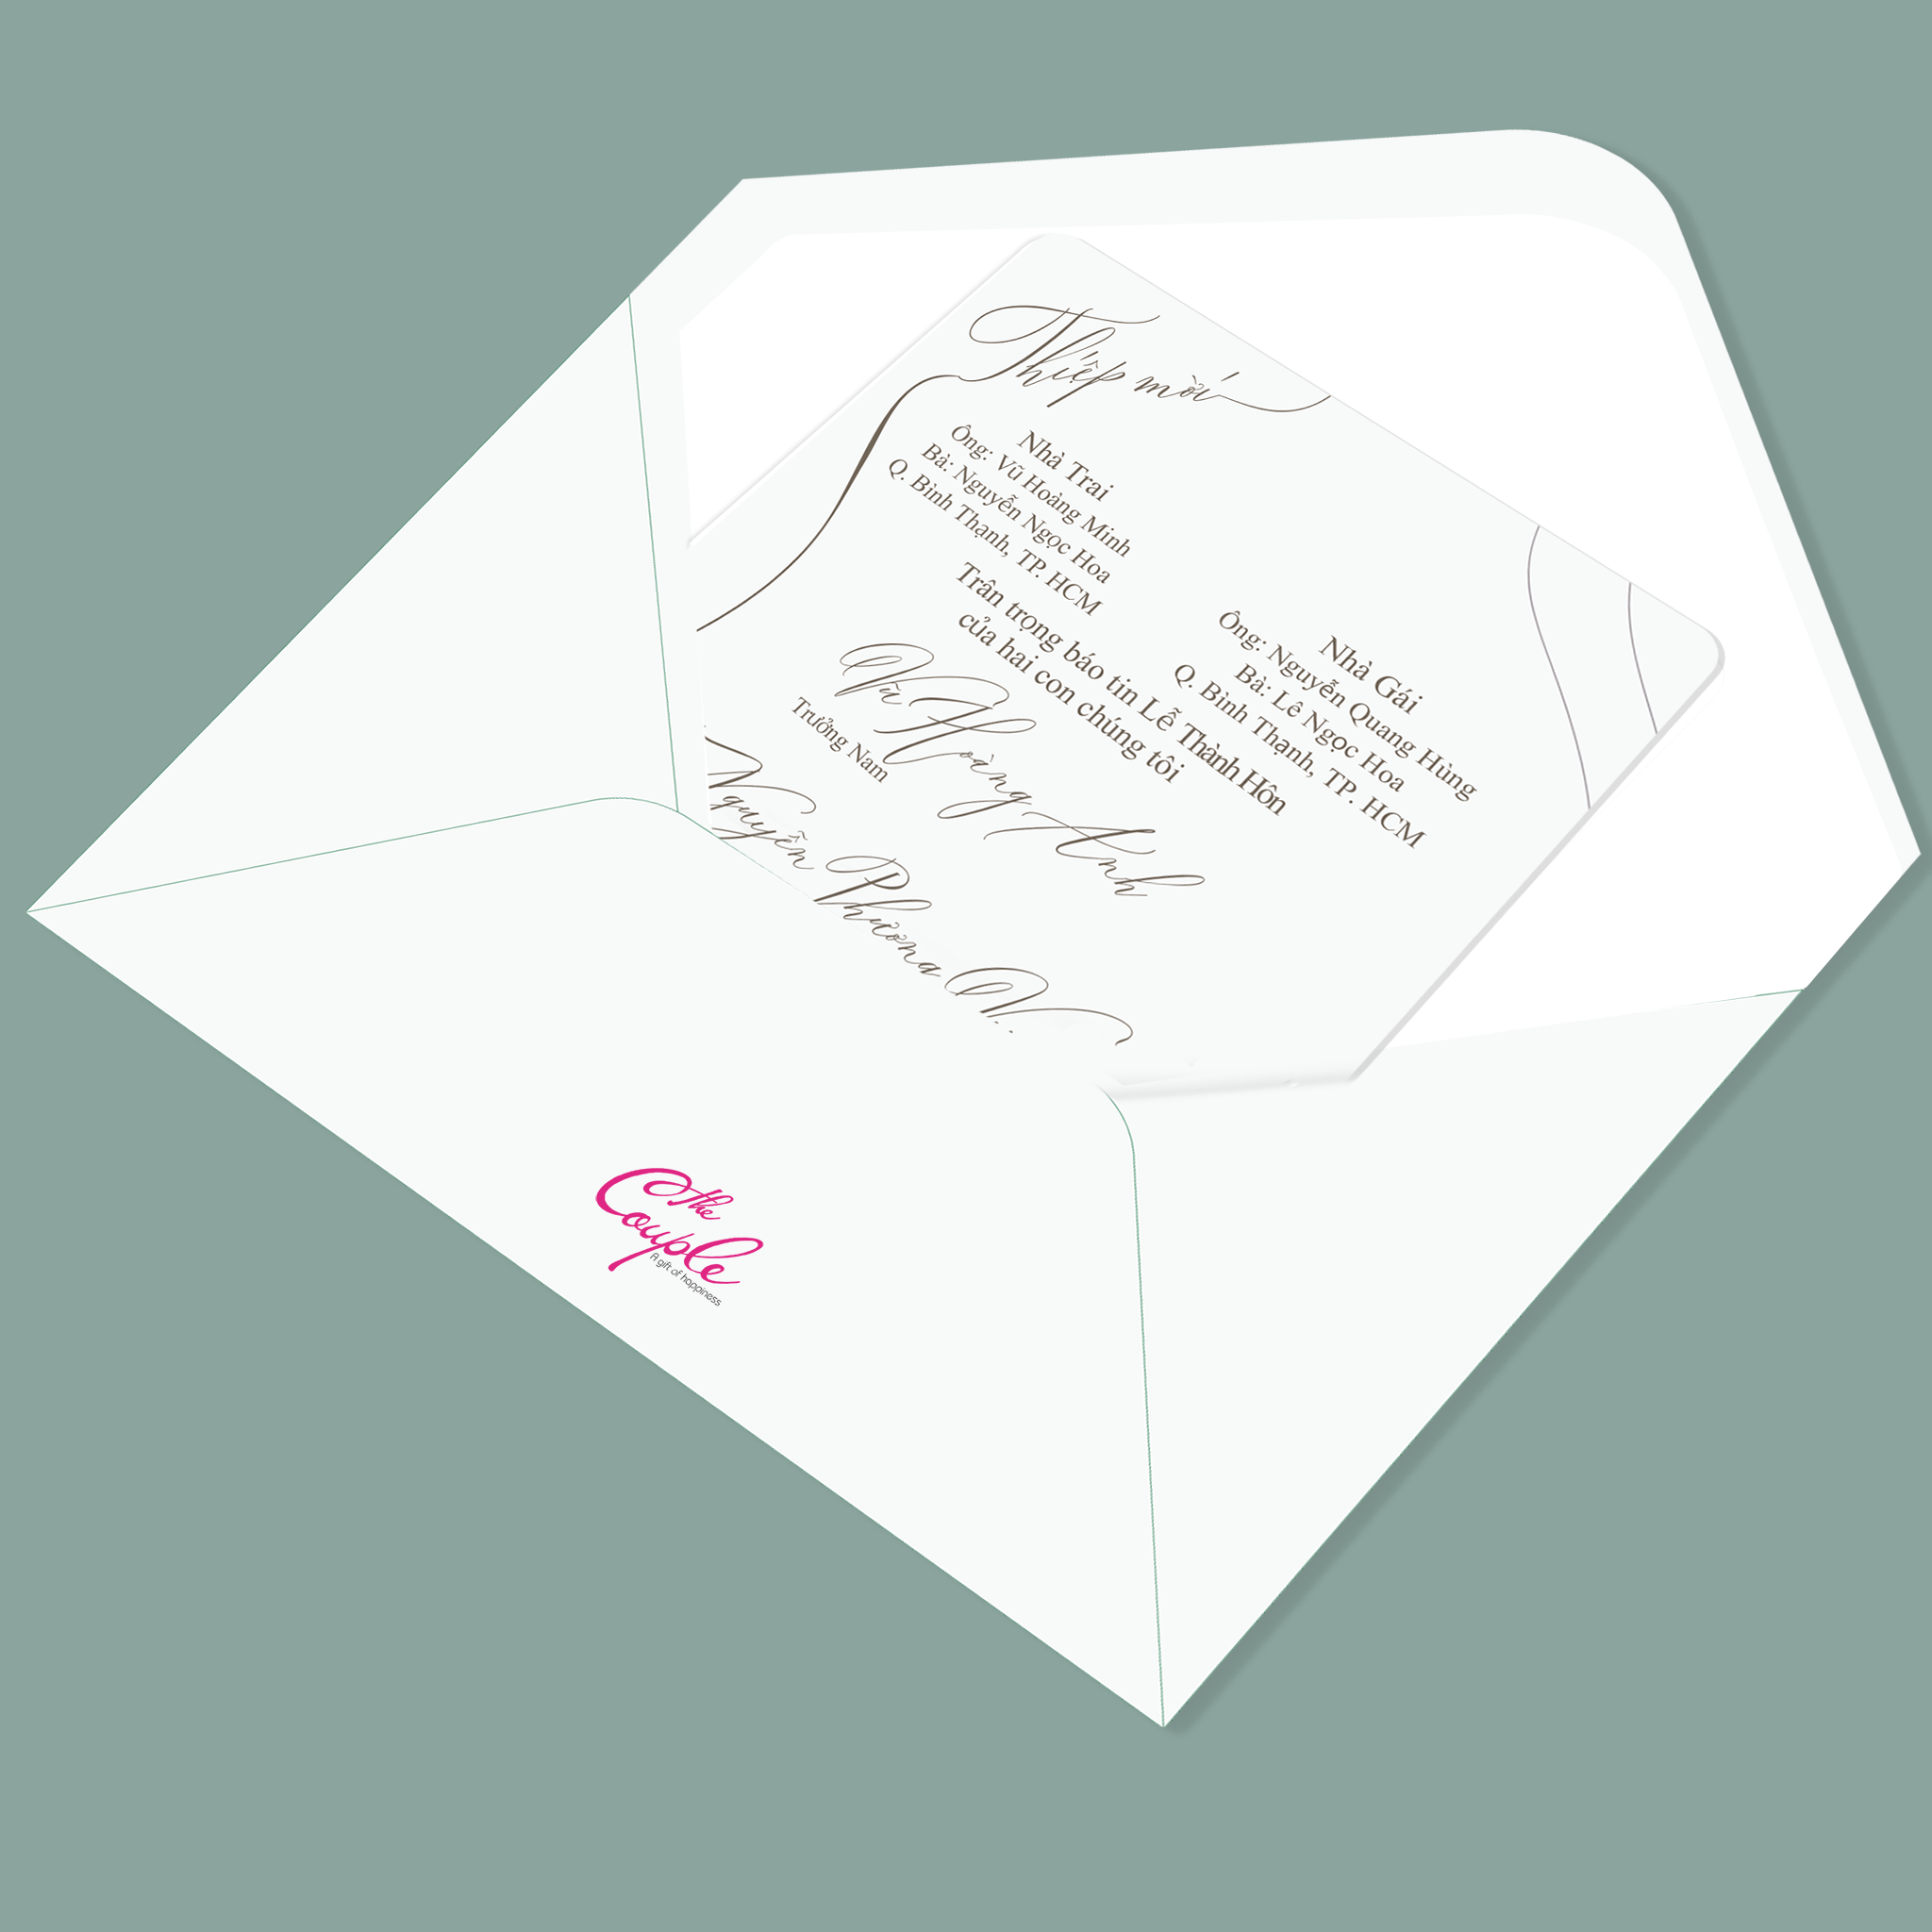  Thiệp cưới IMELA - Thiệp cưới hiện đại - Thiết kế thiệp cưới in sẵn The Couple 